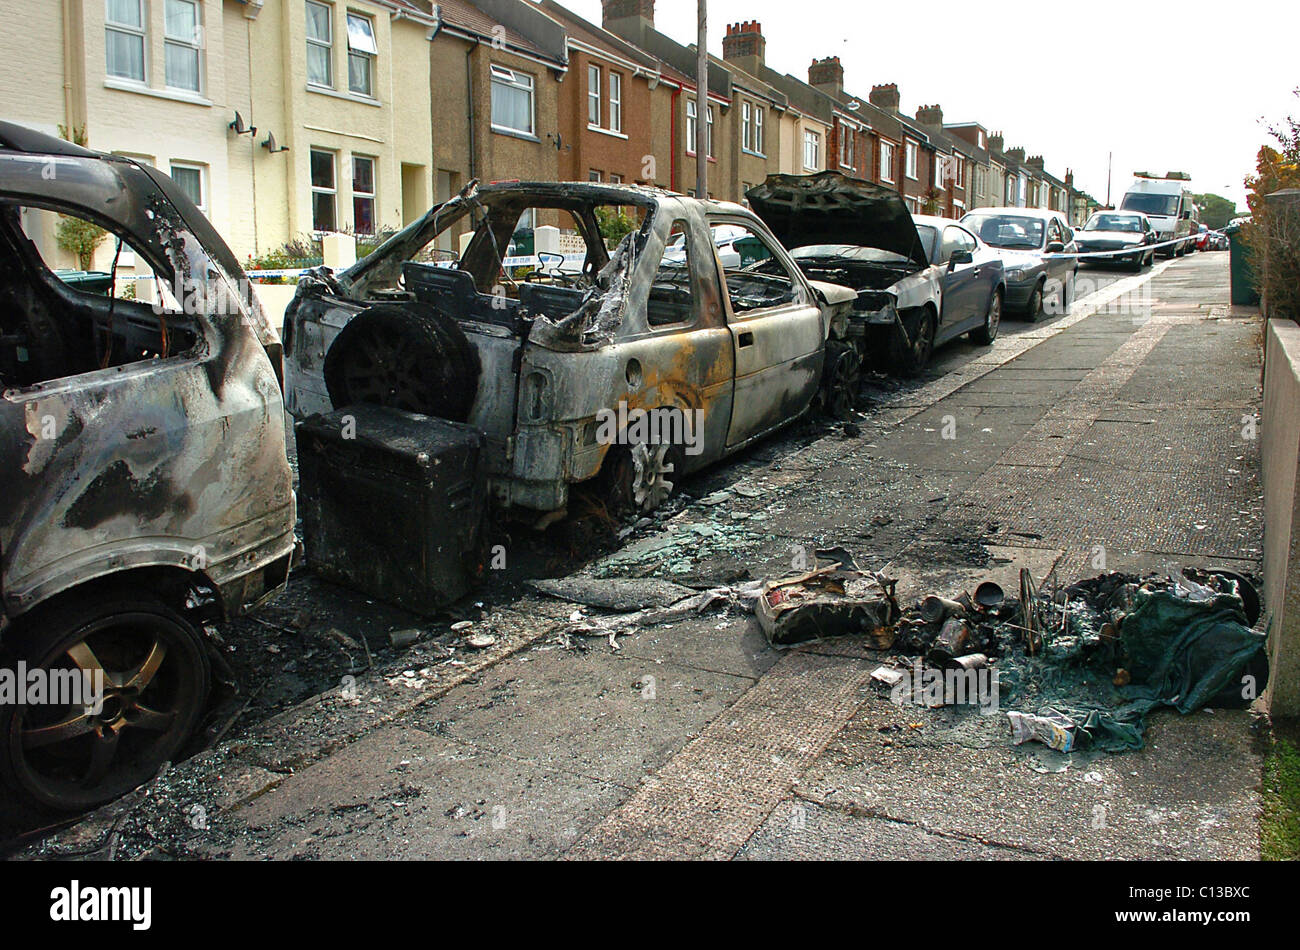 Restos de varios coches quemados tras un ataque incendiario en una calle residencial de Brighton Foto de stock